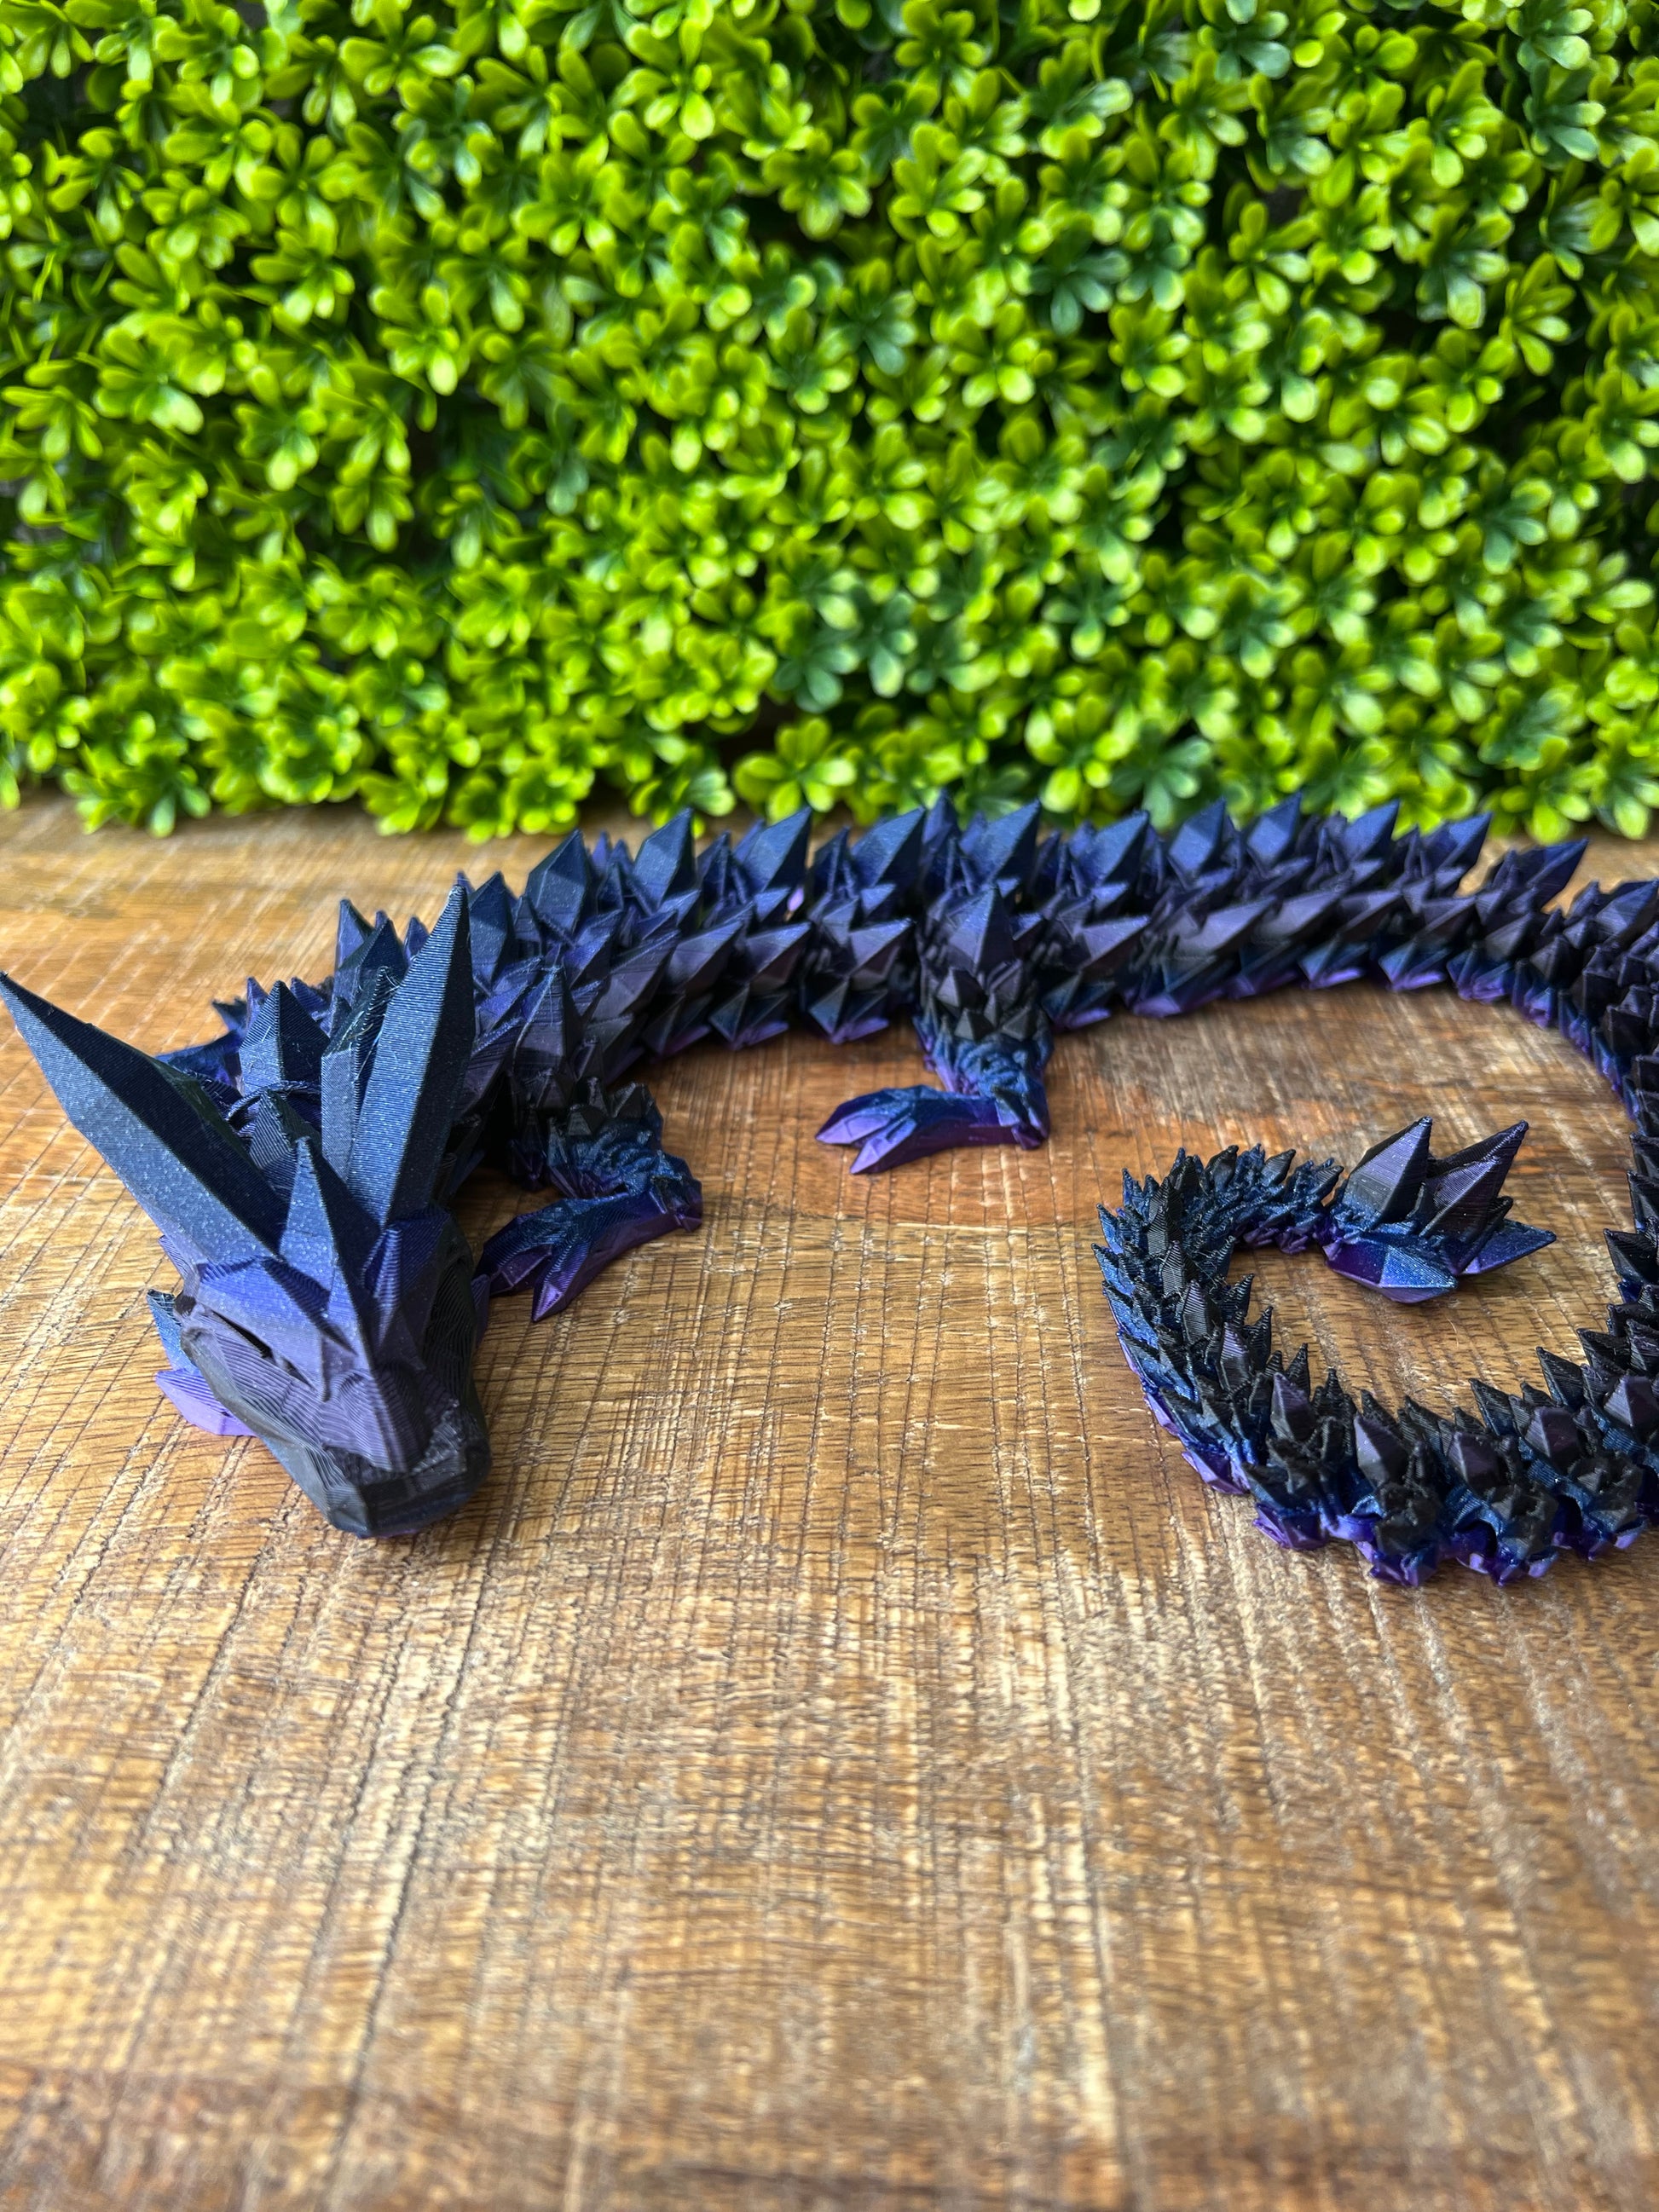 Buy 24 Inch Crystal Dragon, Articulated Dragon, Fidget Toy, Fidget